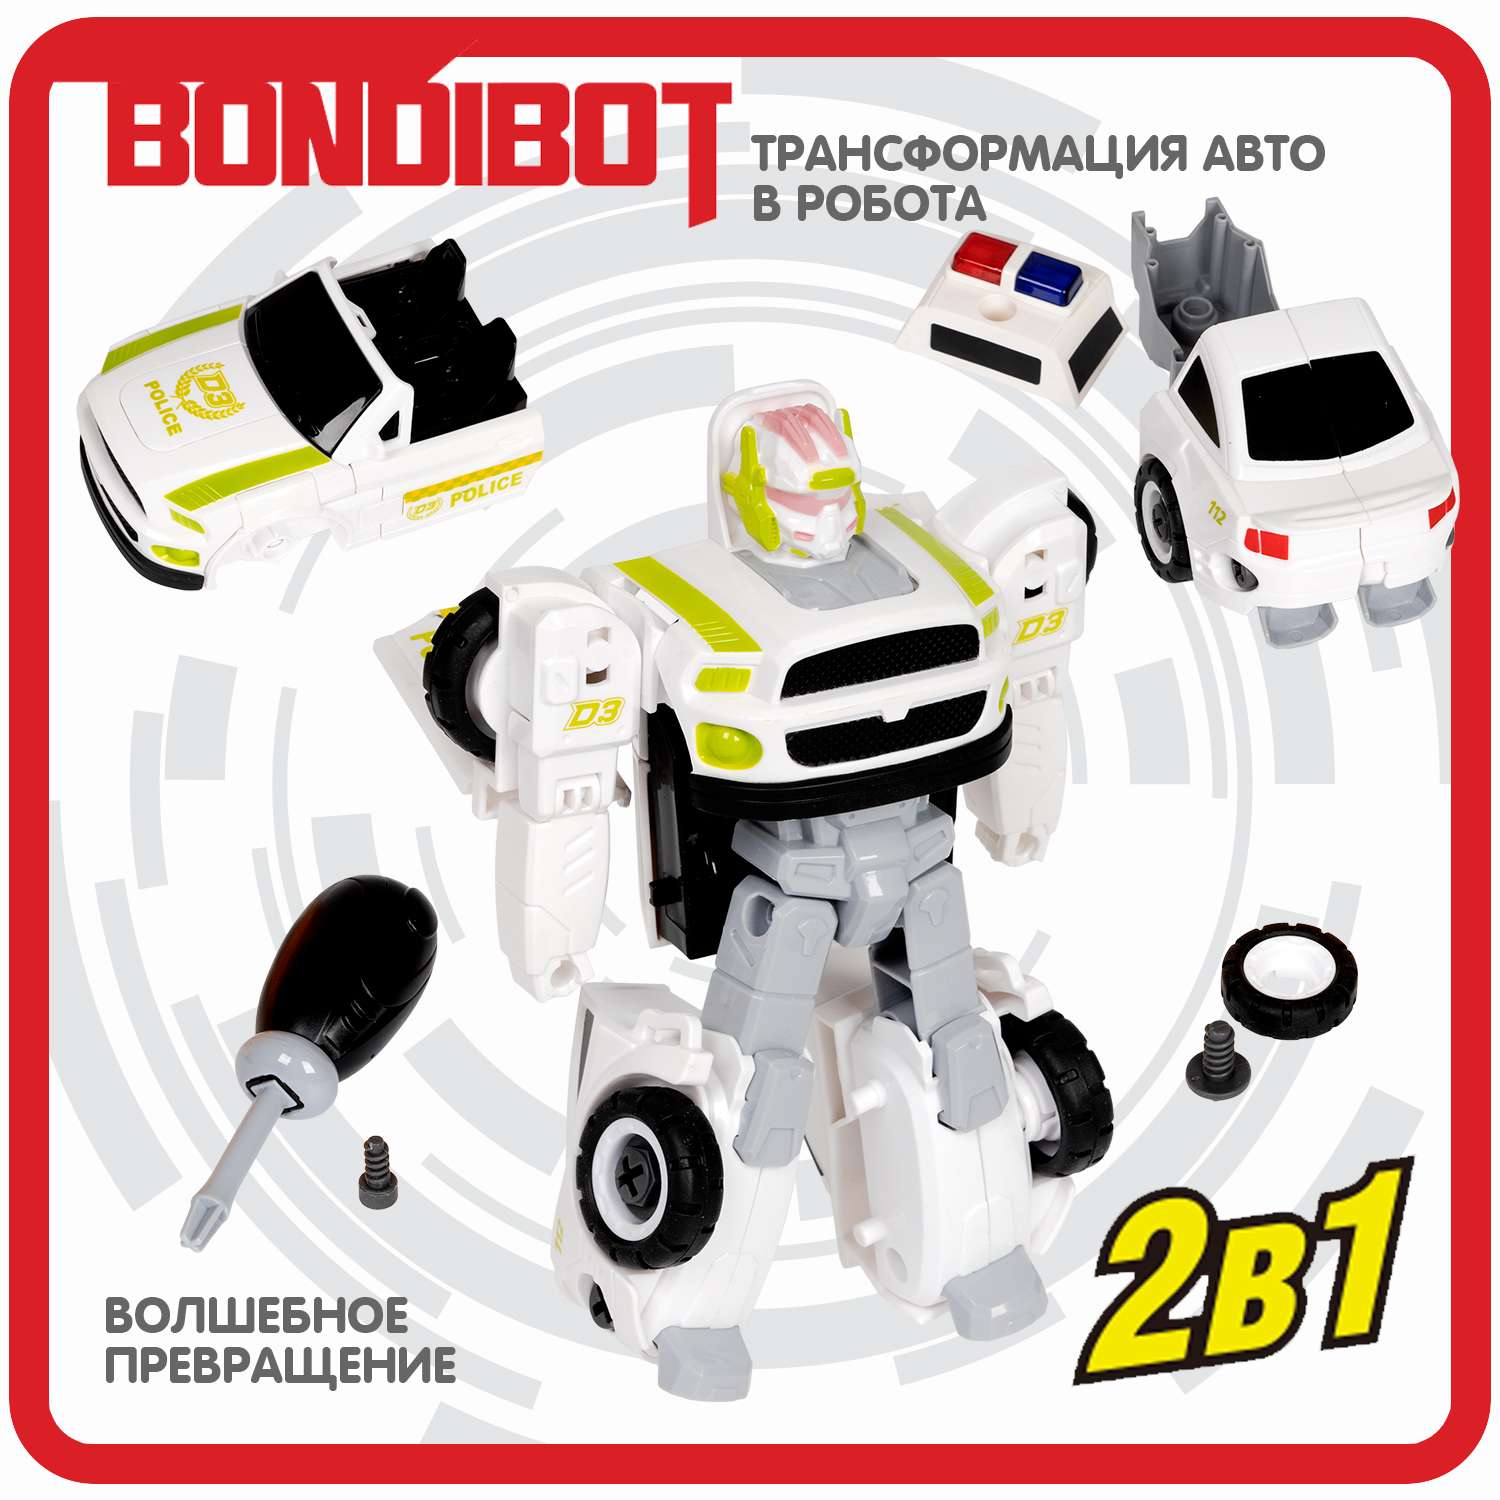 Трансформер BONDIBON Bondibot Робот-автомобиль 2 в 1 с отвёрткой Полиция белого цвета - фото 4